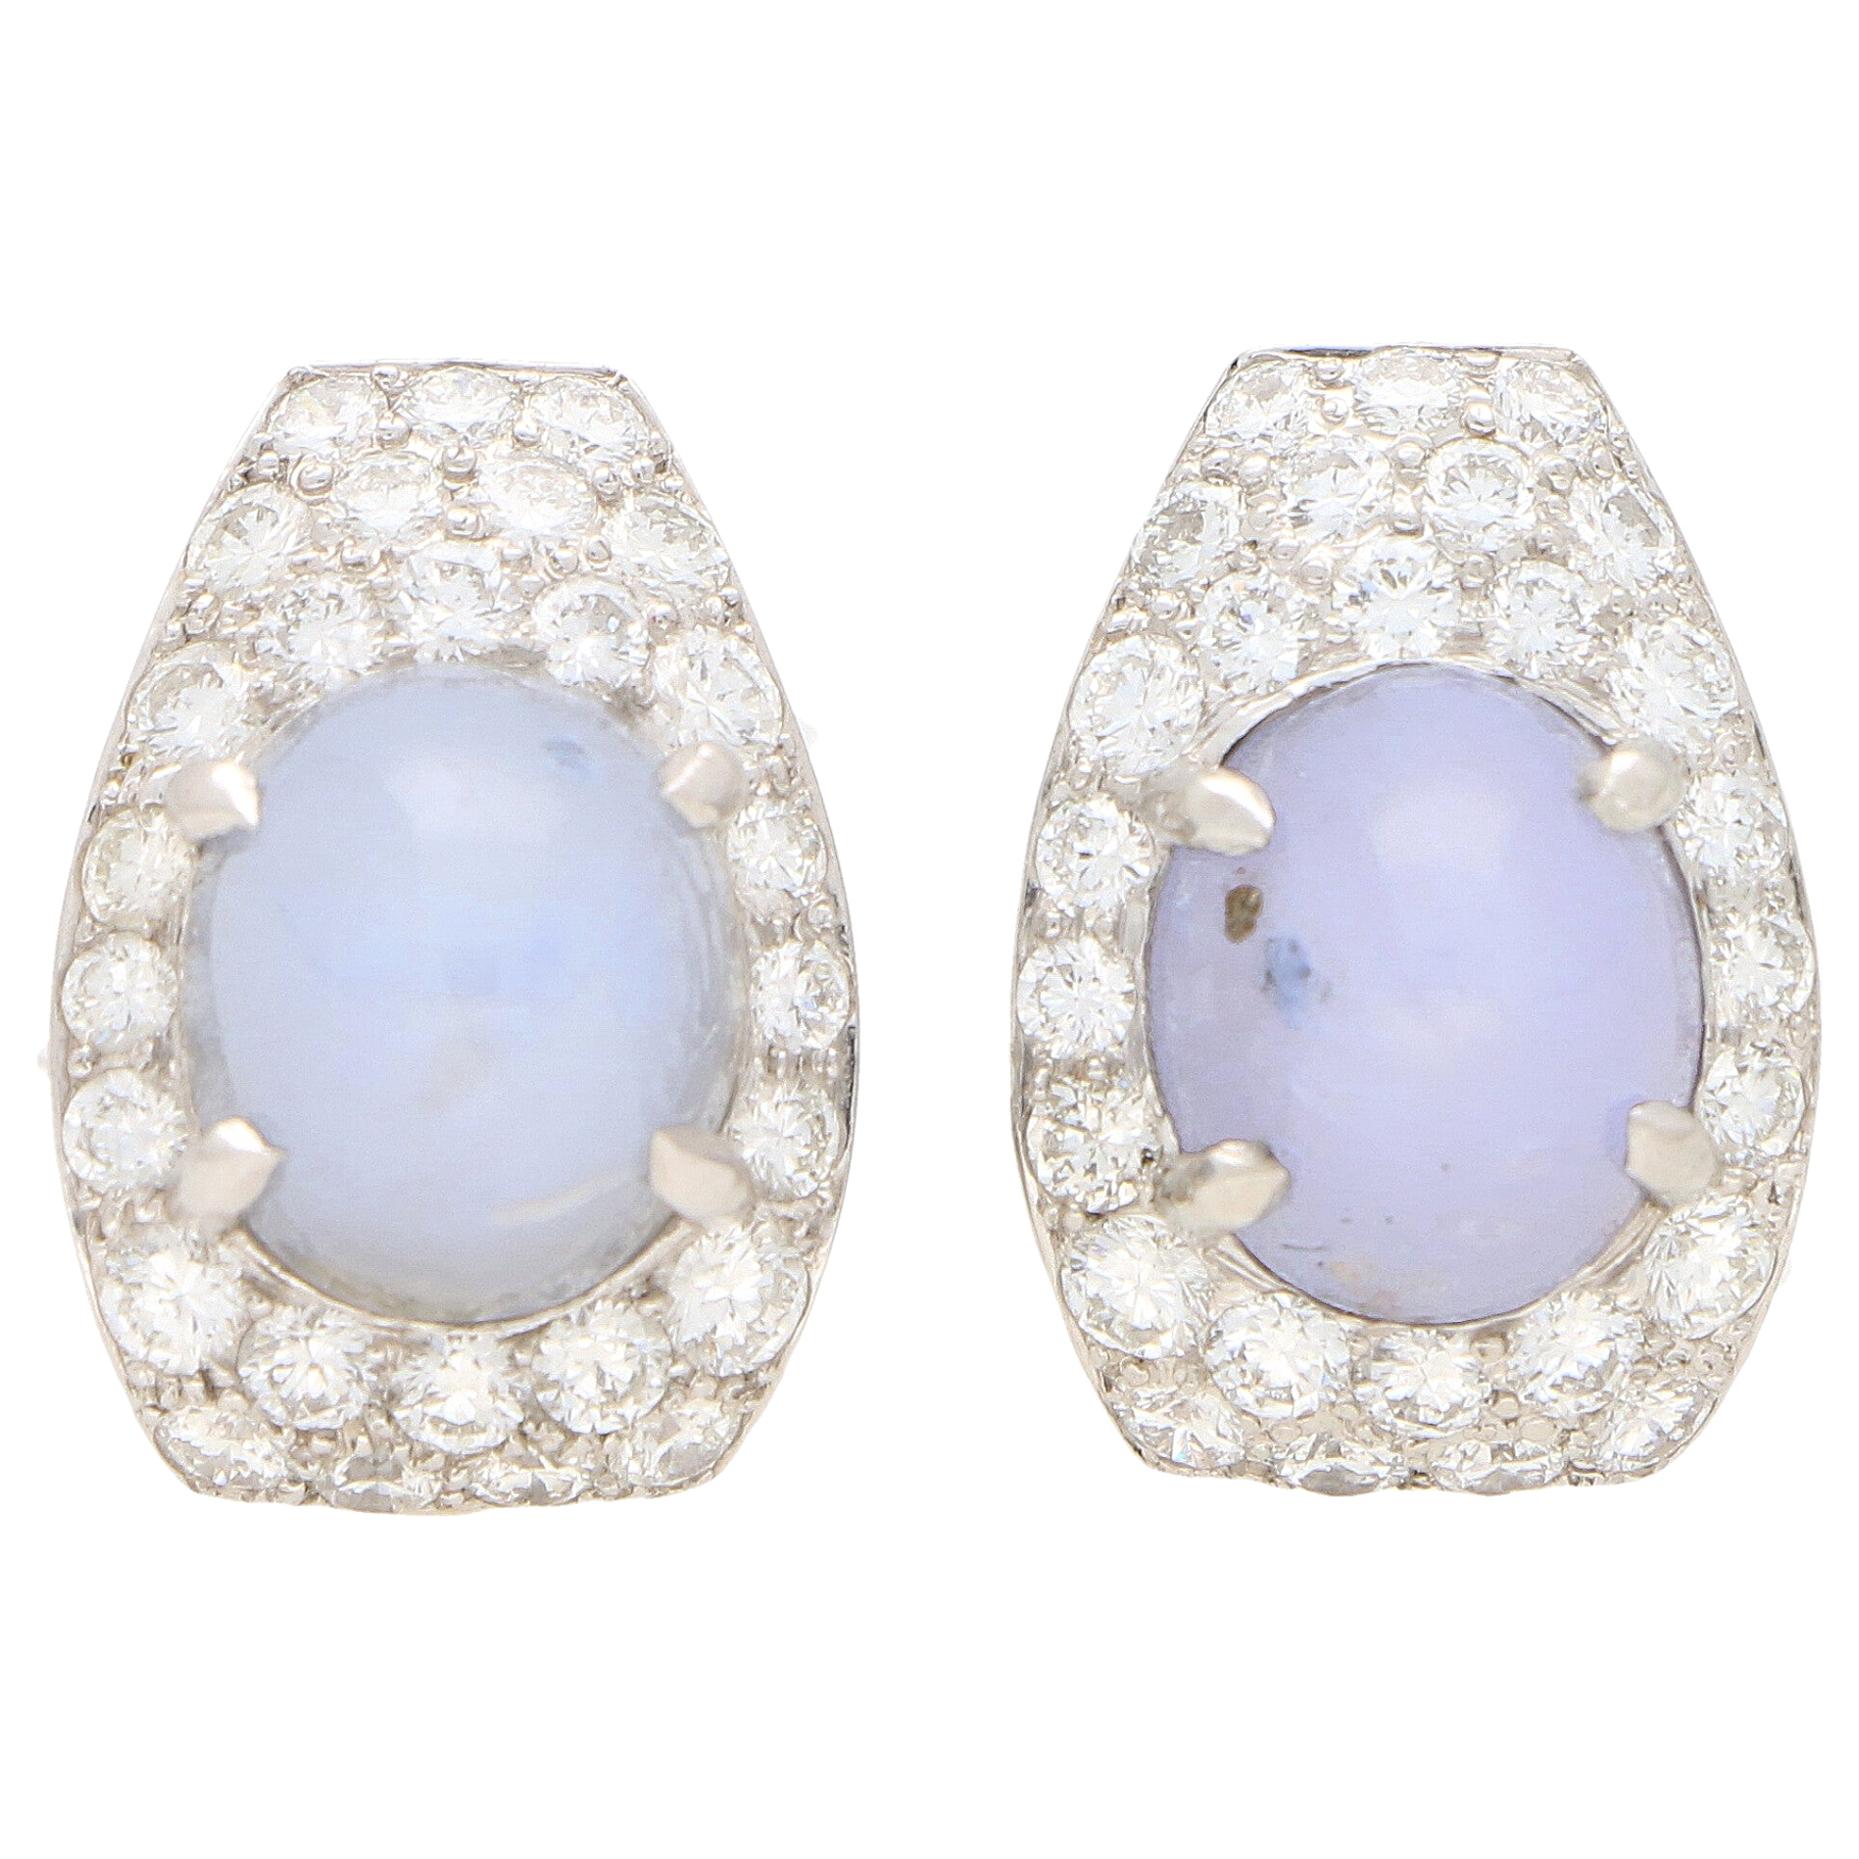 Art Deco Inspired Star Sapphire and Diamond Earrings Set in 18 Karat White Gold